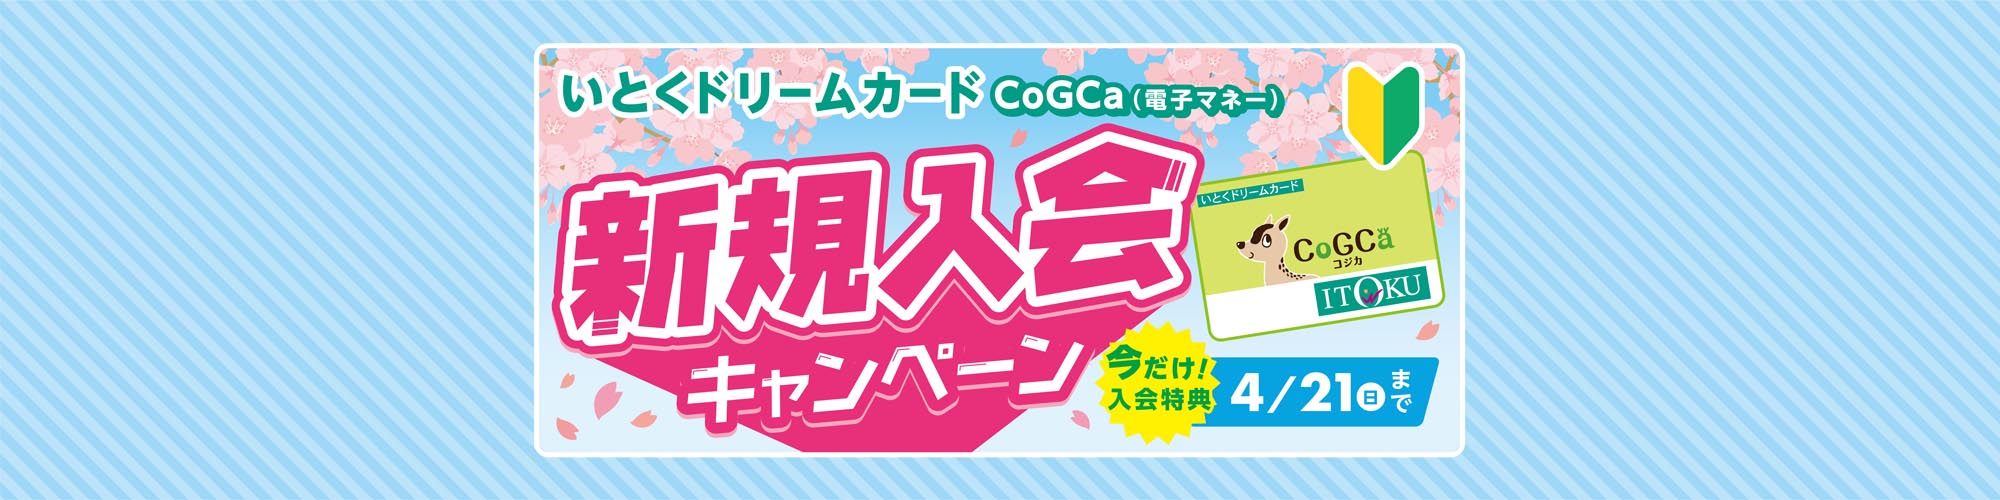 CoGCa新規入会キャンペーン